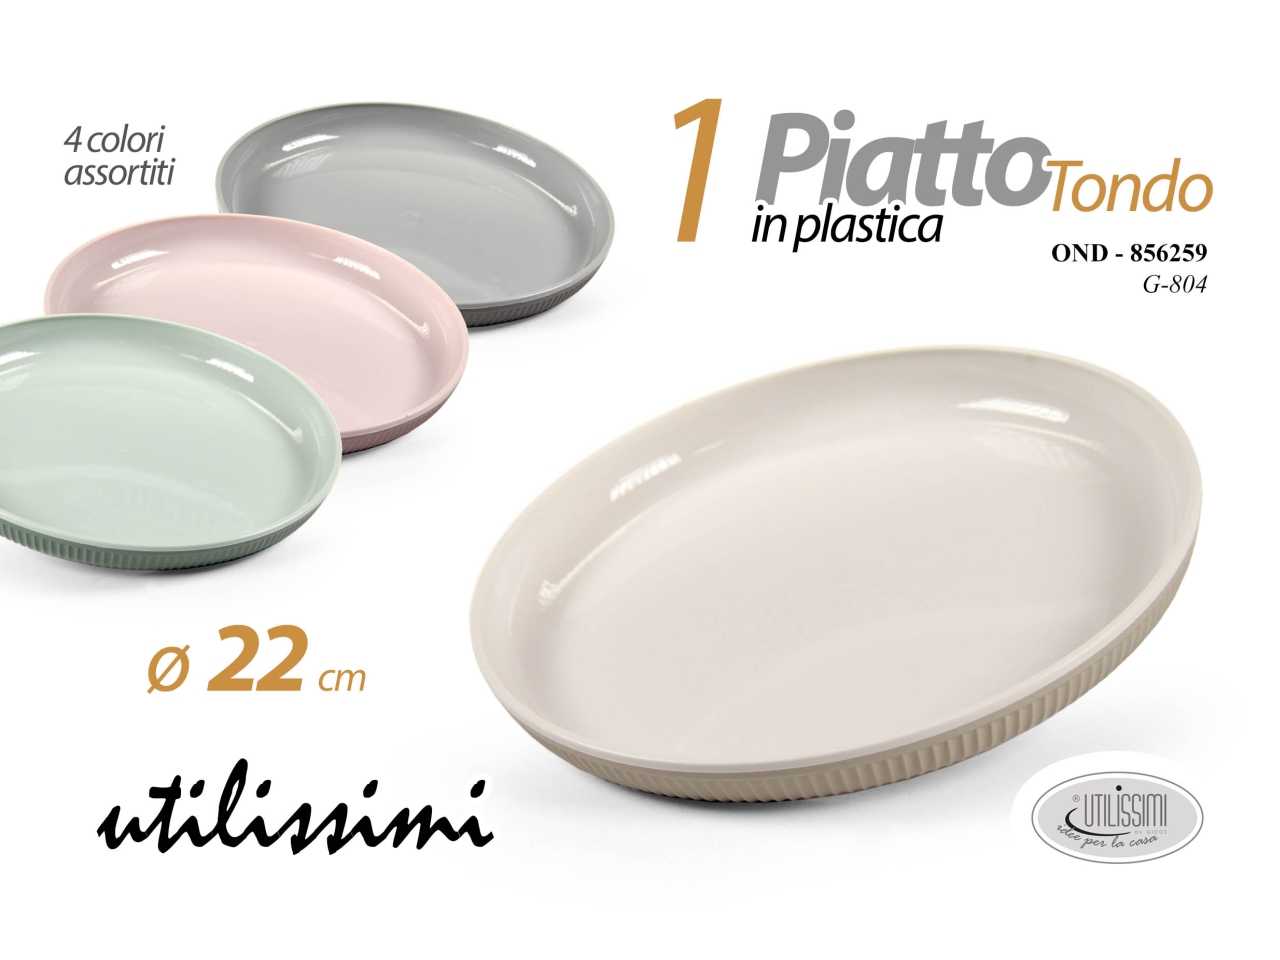 Piatto tondo in plastica diametro 22cm - disponibile in 4 colorazioni